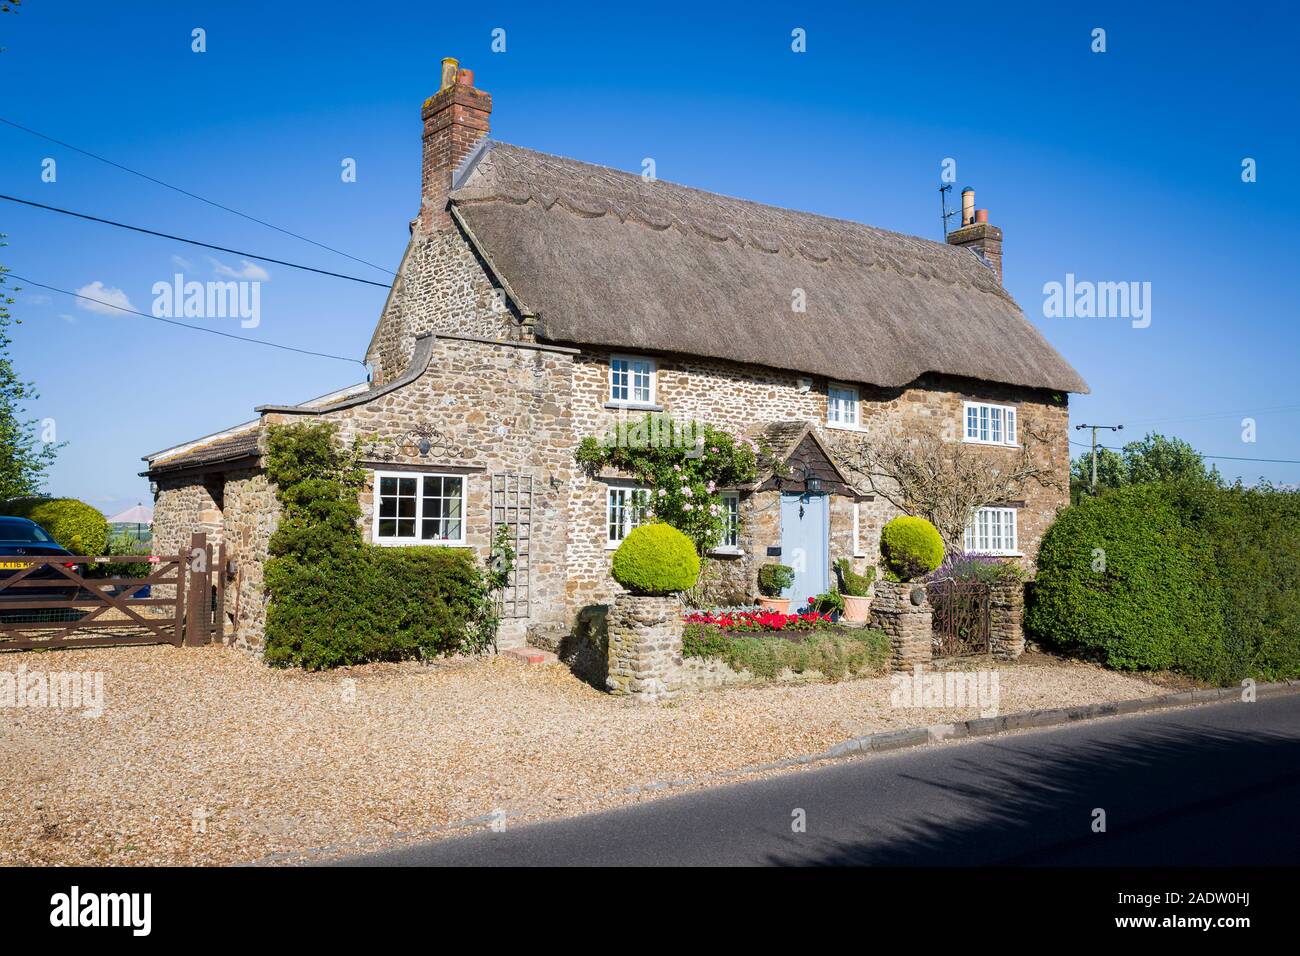 Un joli cottage de chaume sur la roadsise par Sandy Lane village de la paroisse de Bromham et Chittoe Wiltshire England UK Banque D'Images